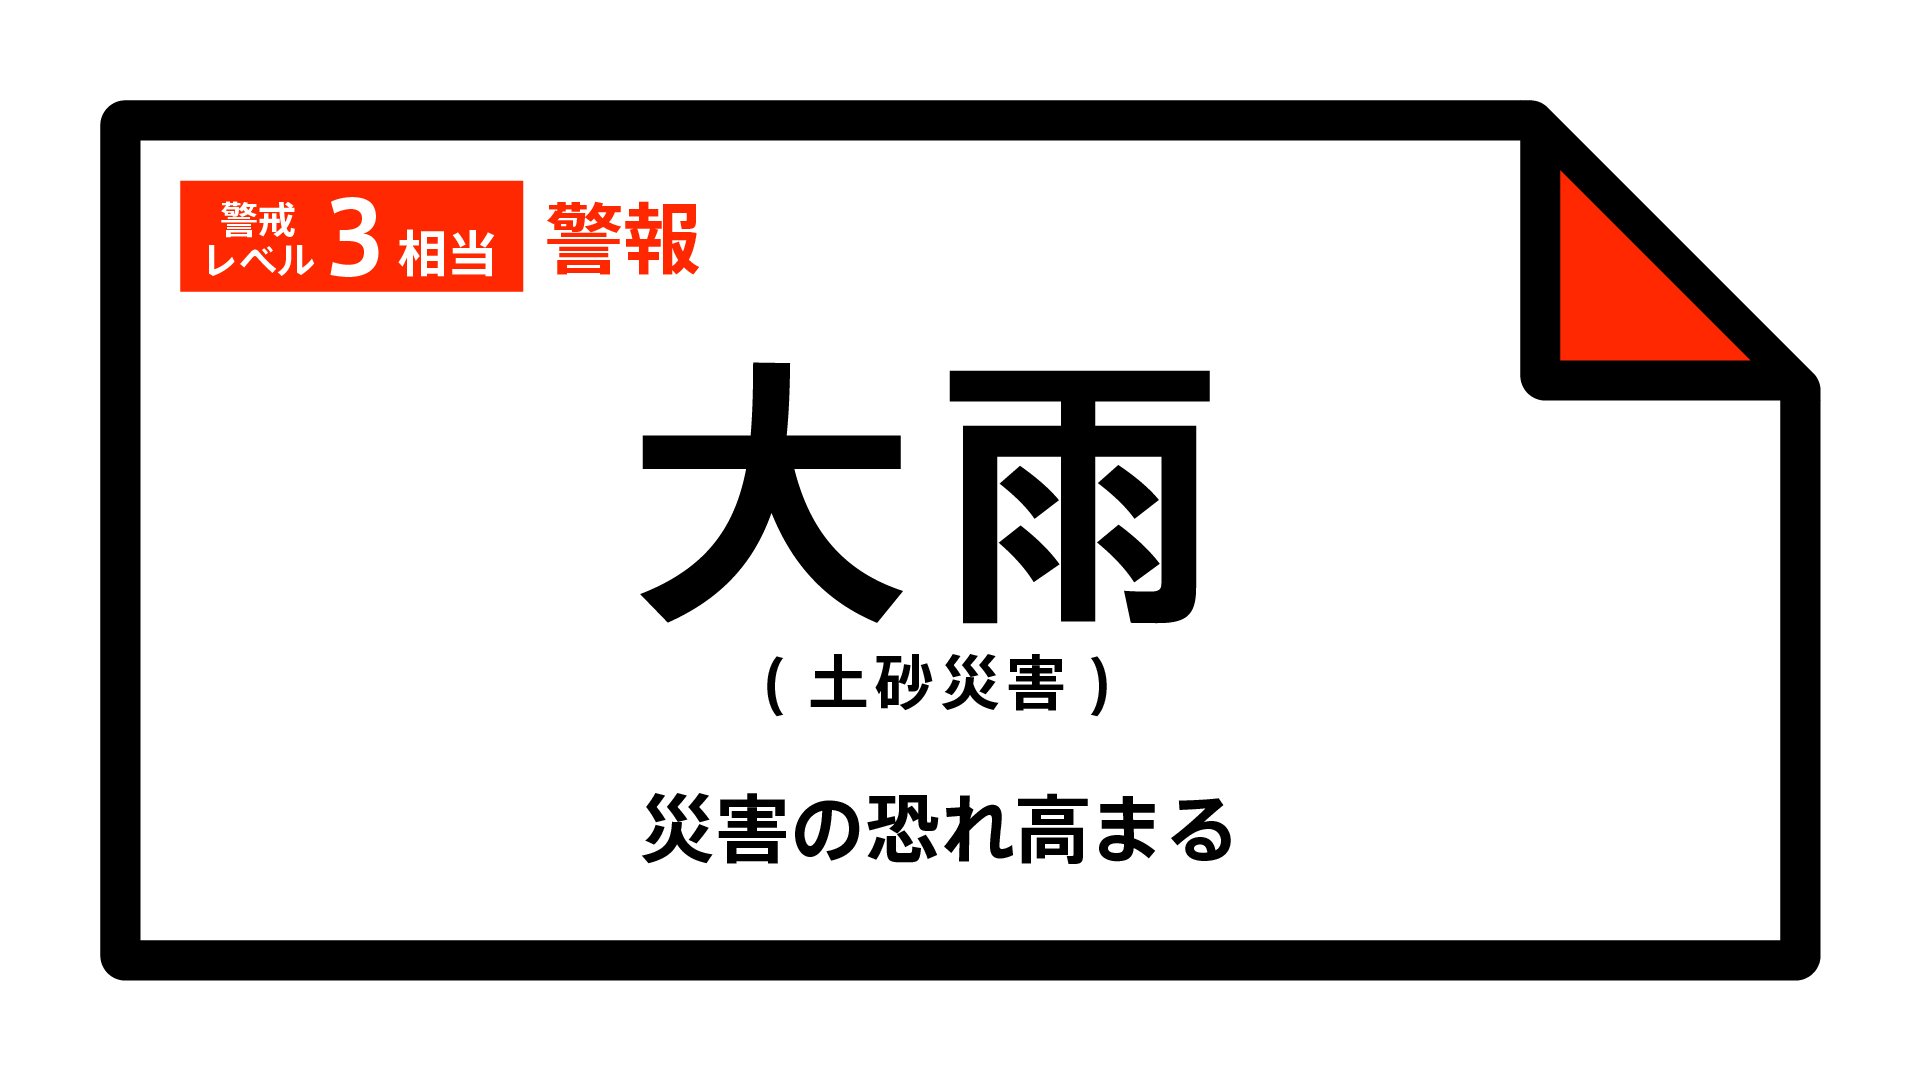 【大雨警報】福岡県・久留米市、八女市、うきは市に発表